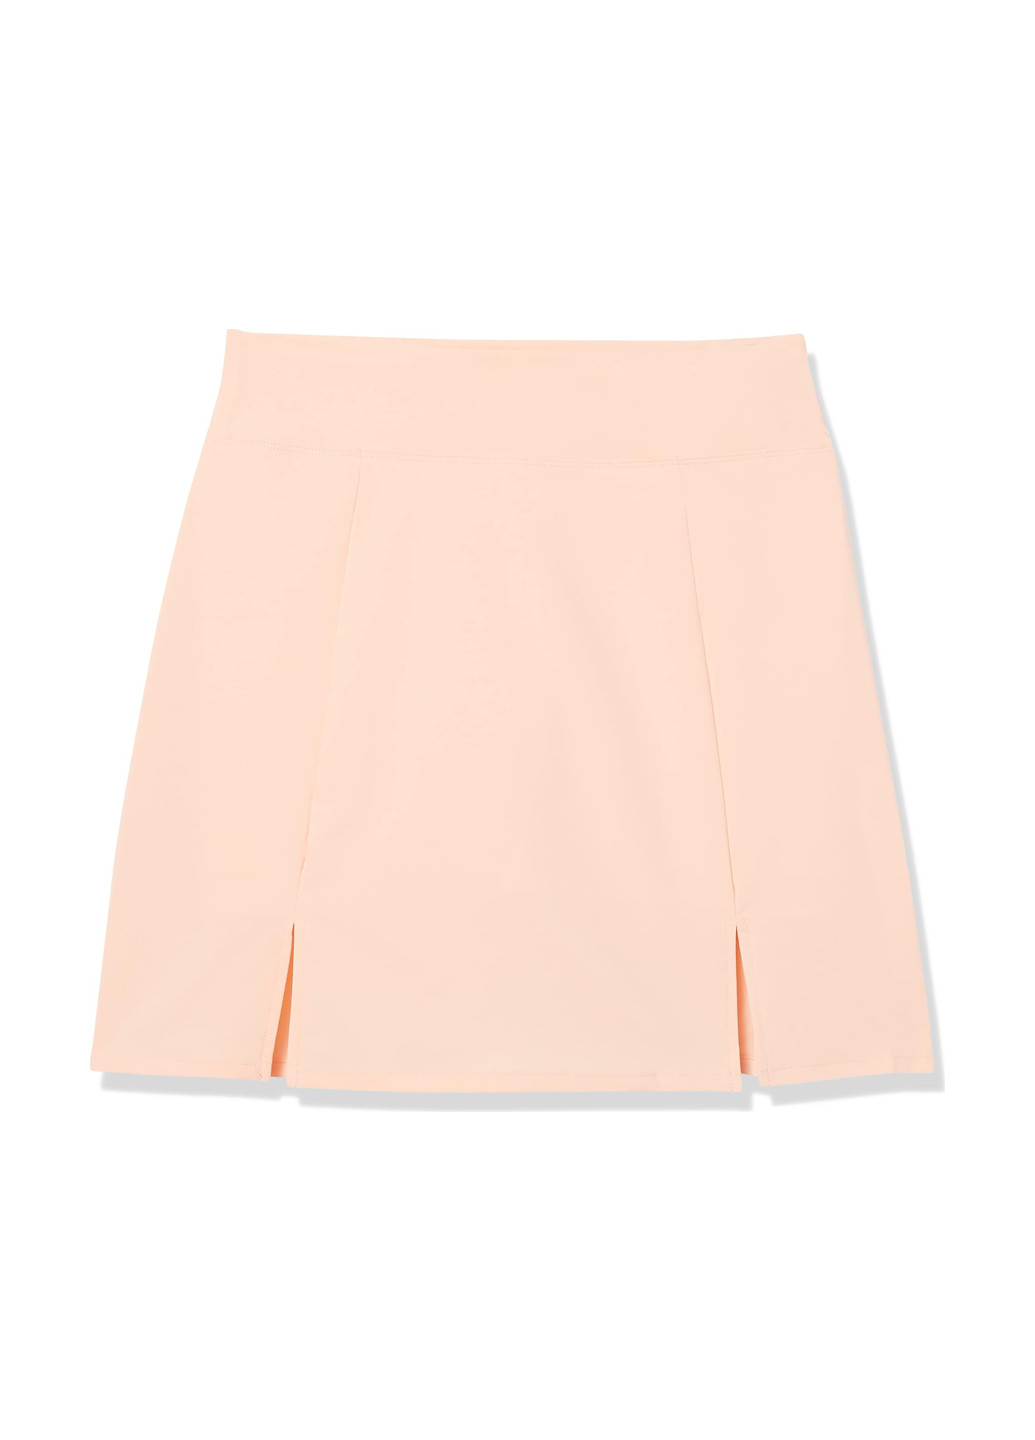 Персиковая спортивная однотонная юбка Amazon Essentials а-силуэта (трапеция)